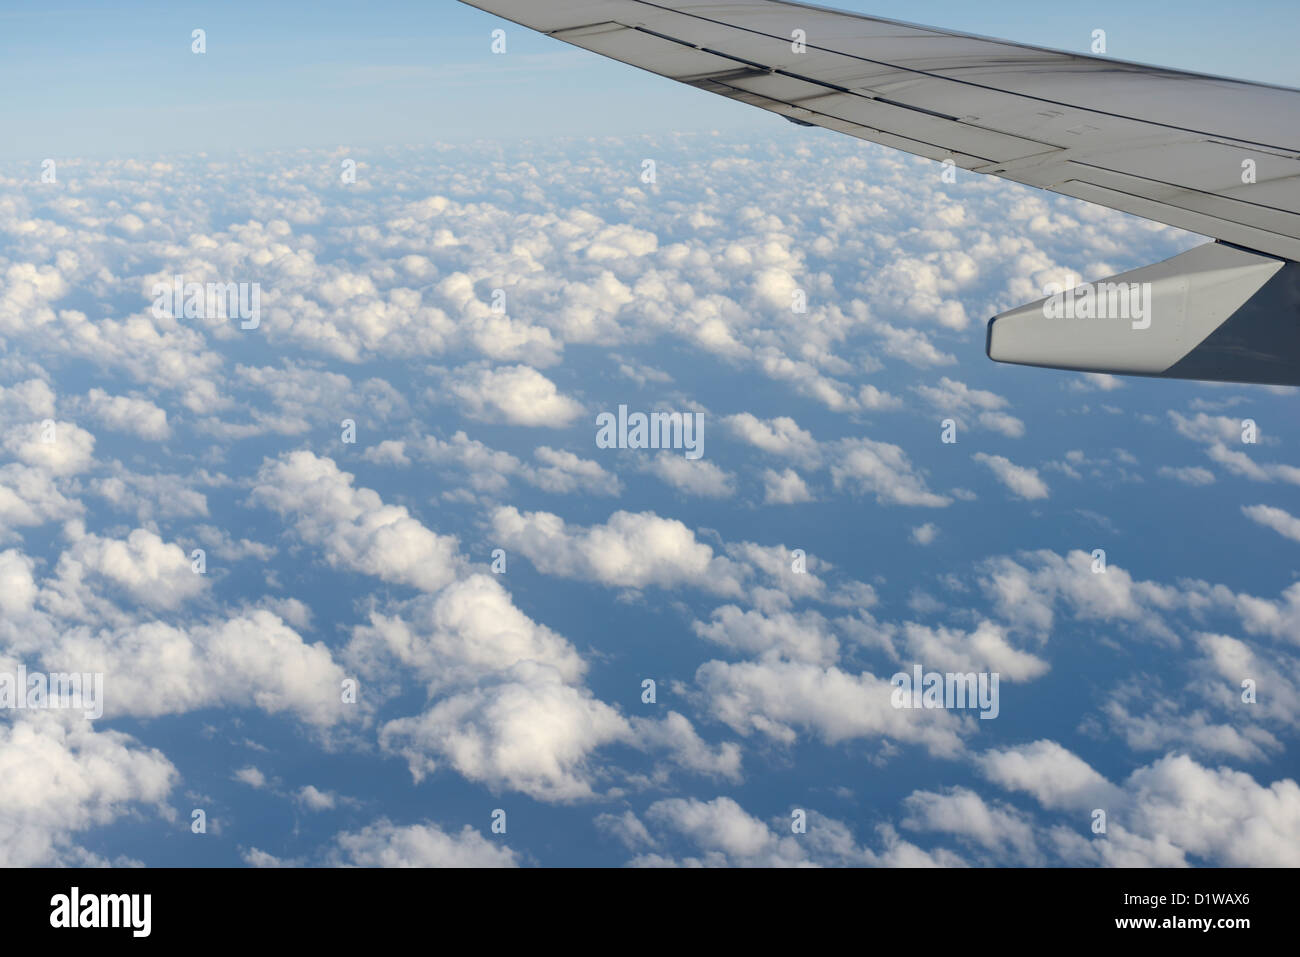 Ala de avión comercial por encima de las nubes, la vista desde la ventana Foto de stock